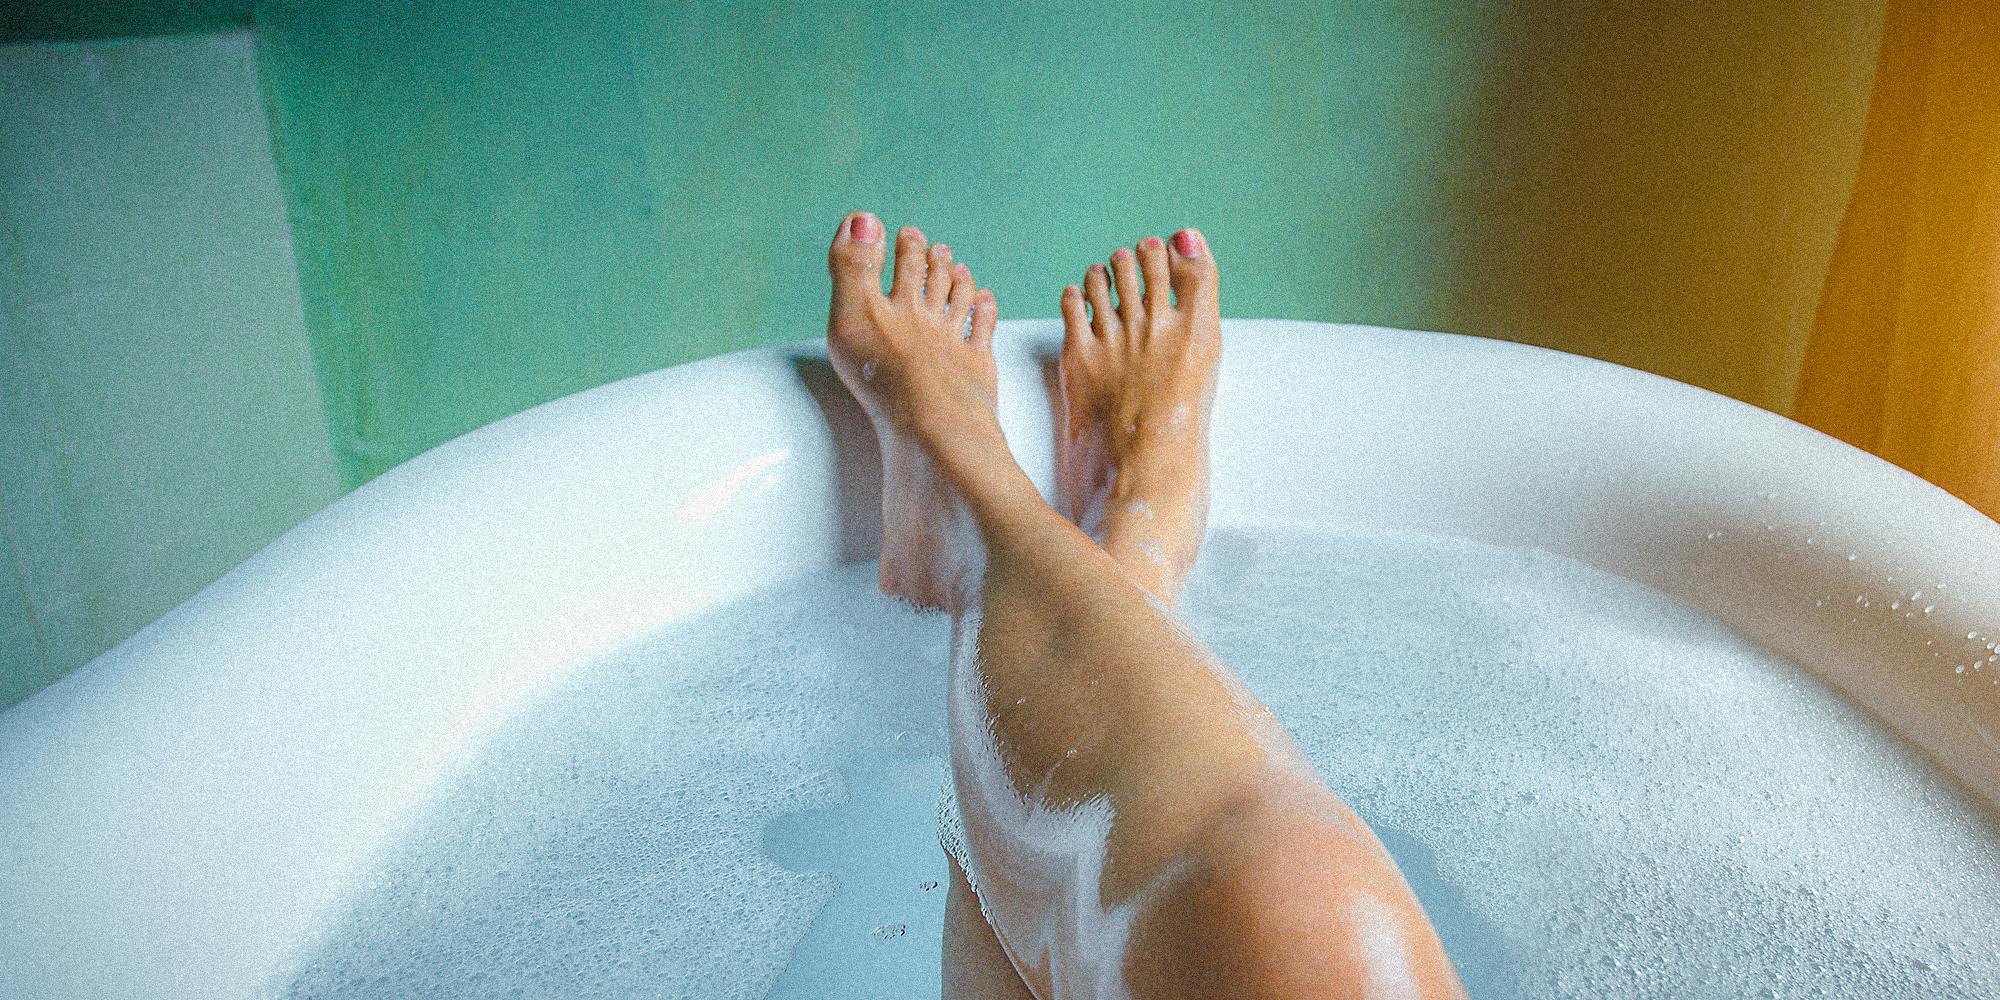 Legs in a bathtub.